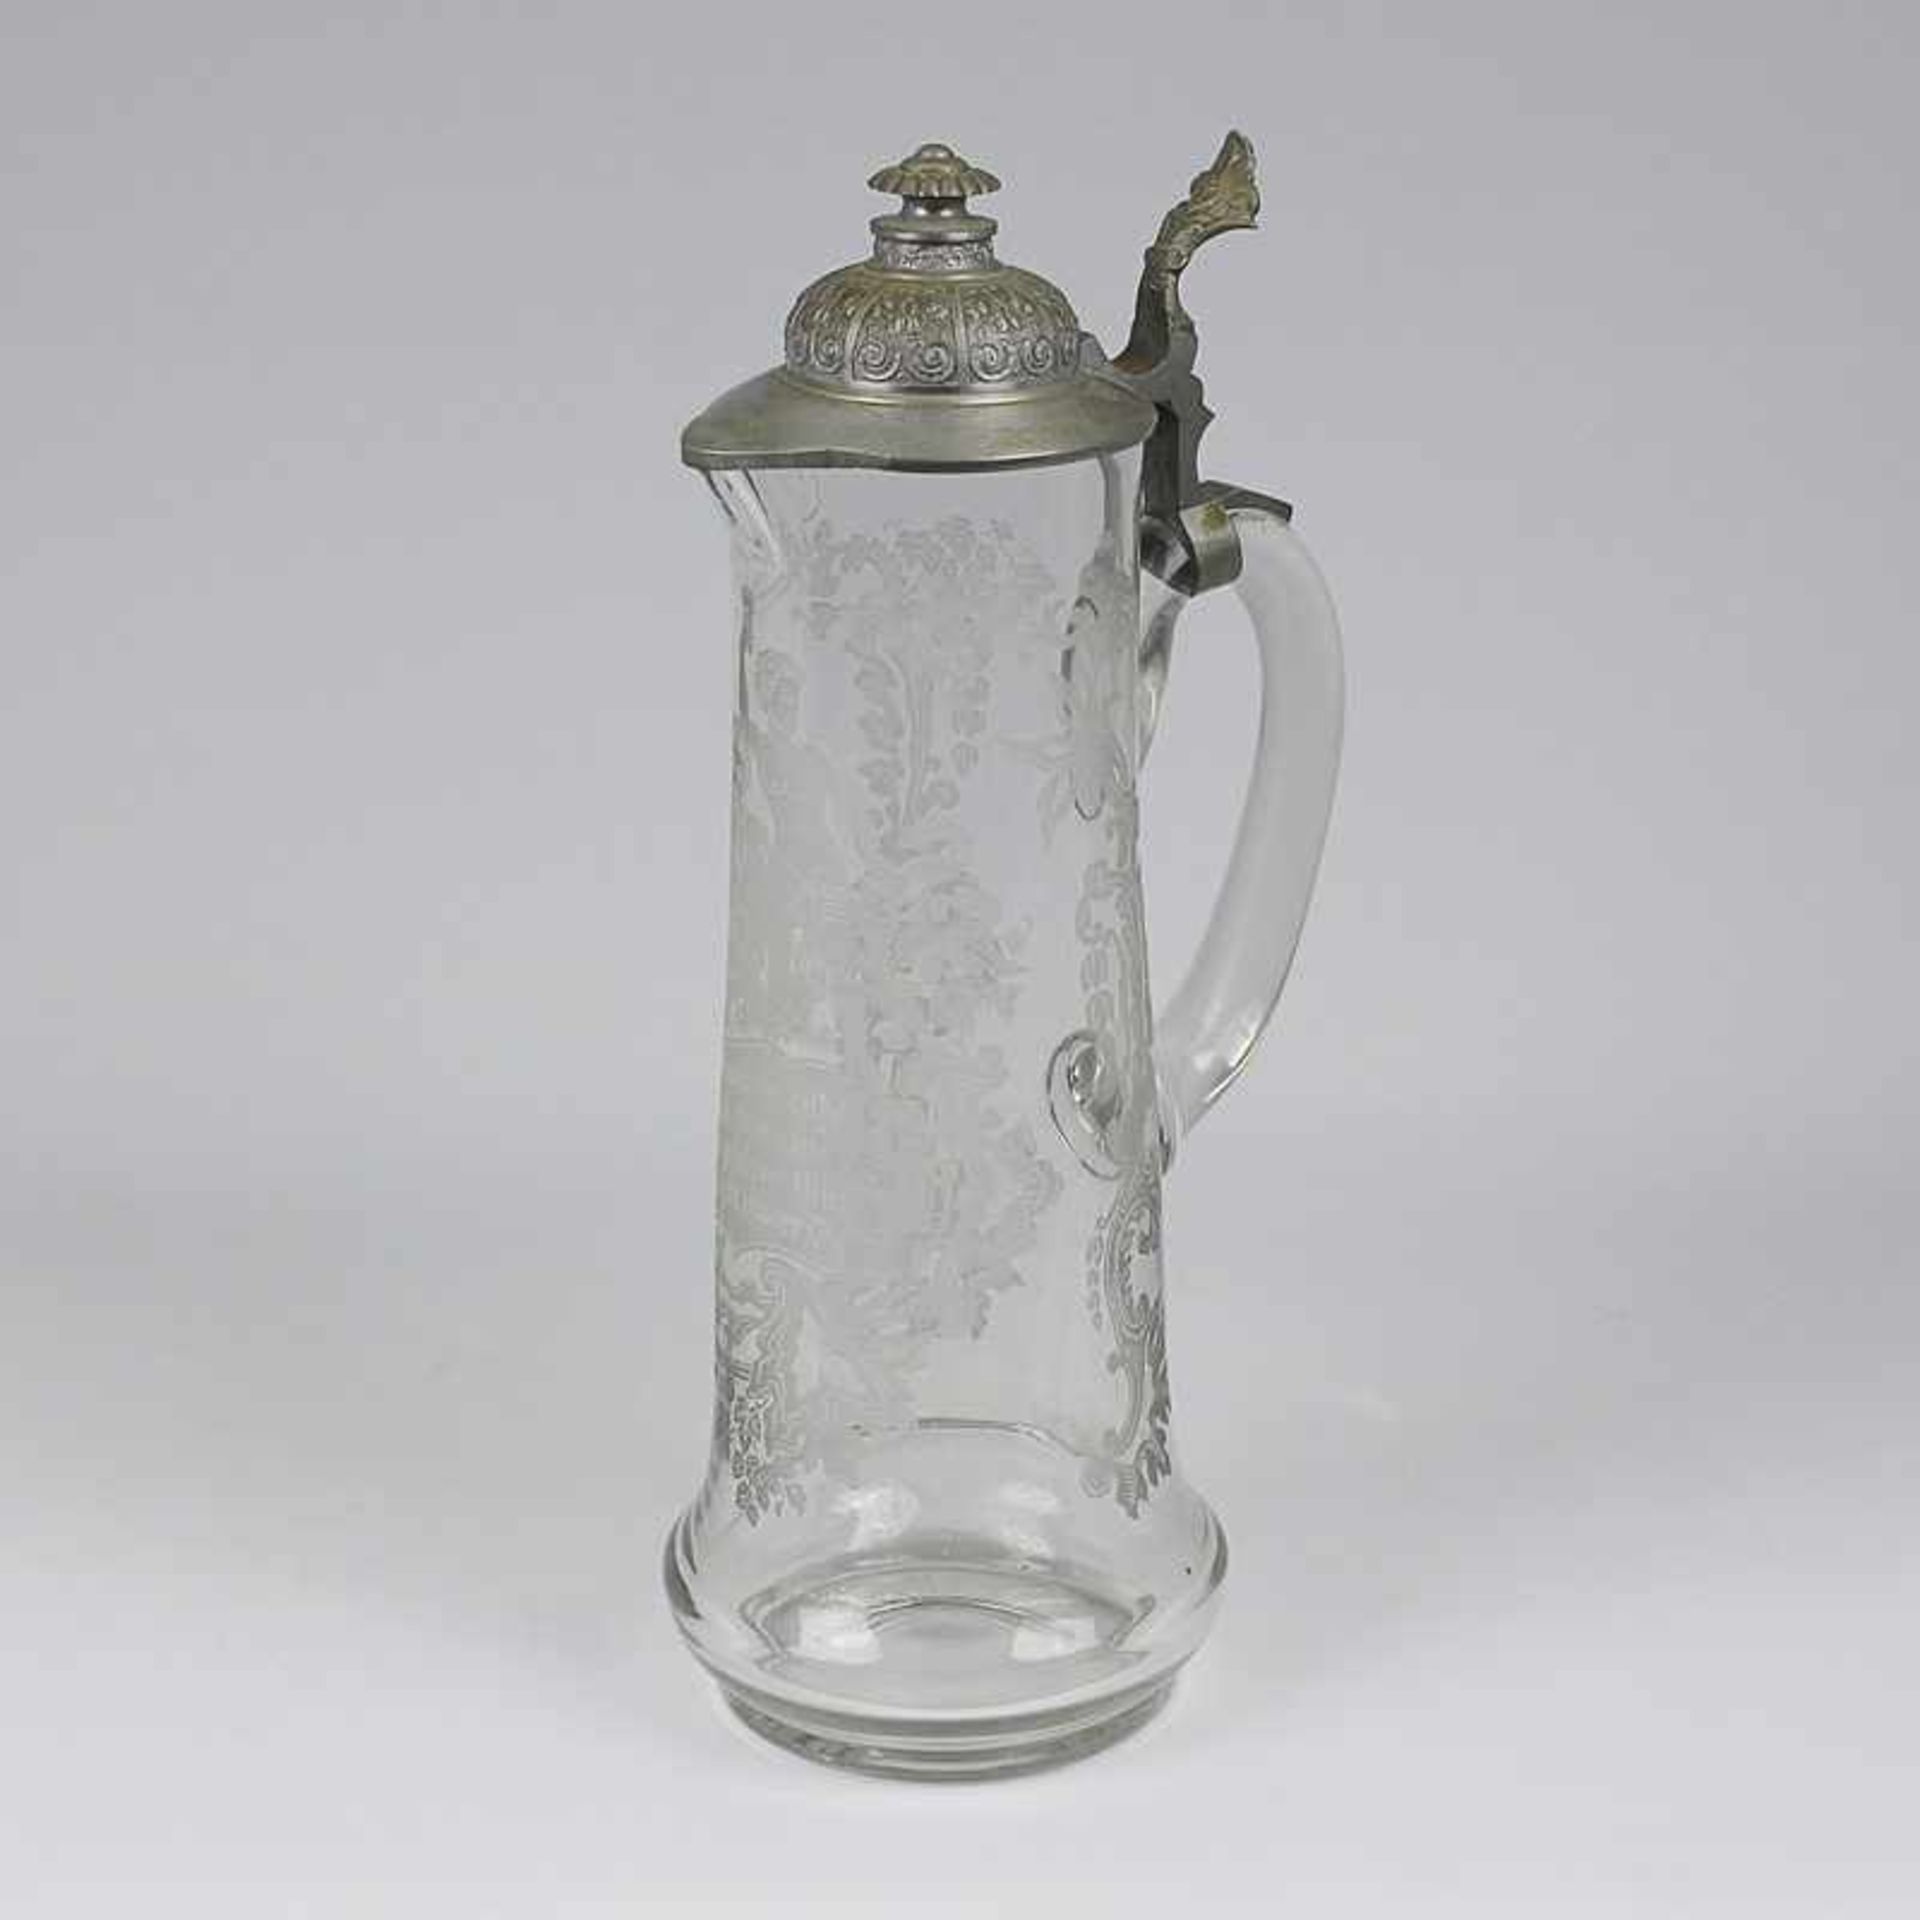 Krug um 1900, farbloses dickw. Glas, runder Stand, zylindrischer Korpus, schaus. sat. Ätzdekor,